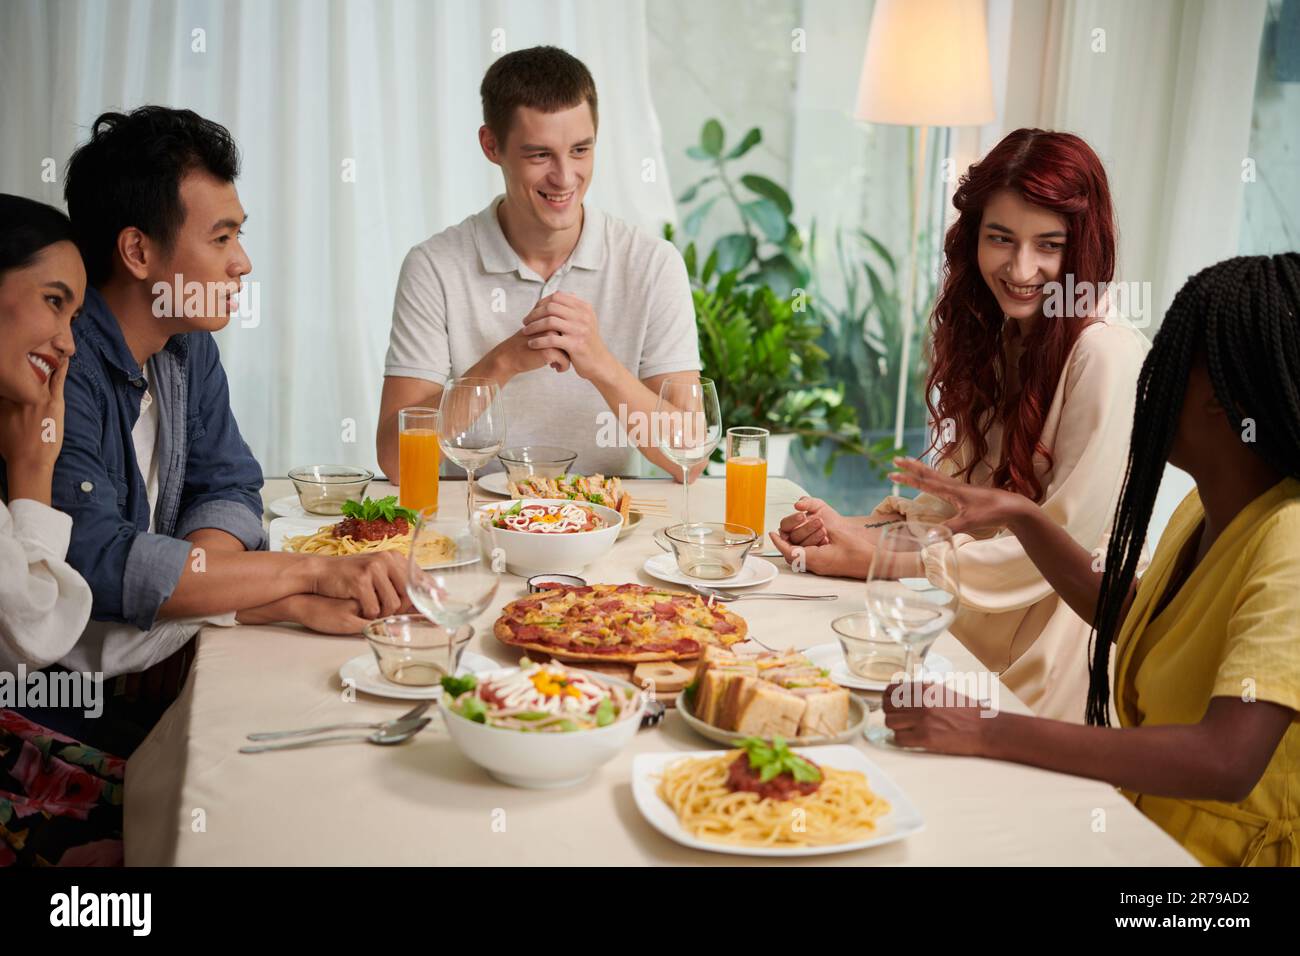 Groupe de jeunes gens interculturels en vêtements décontractés et élégants discutant à table et appréciant un dîner composé de plats faits maison Banque D'Images